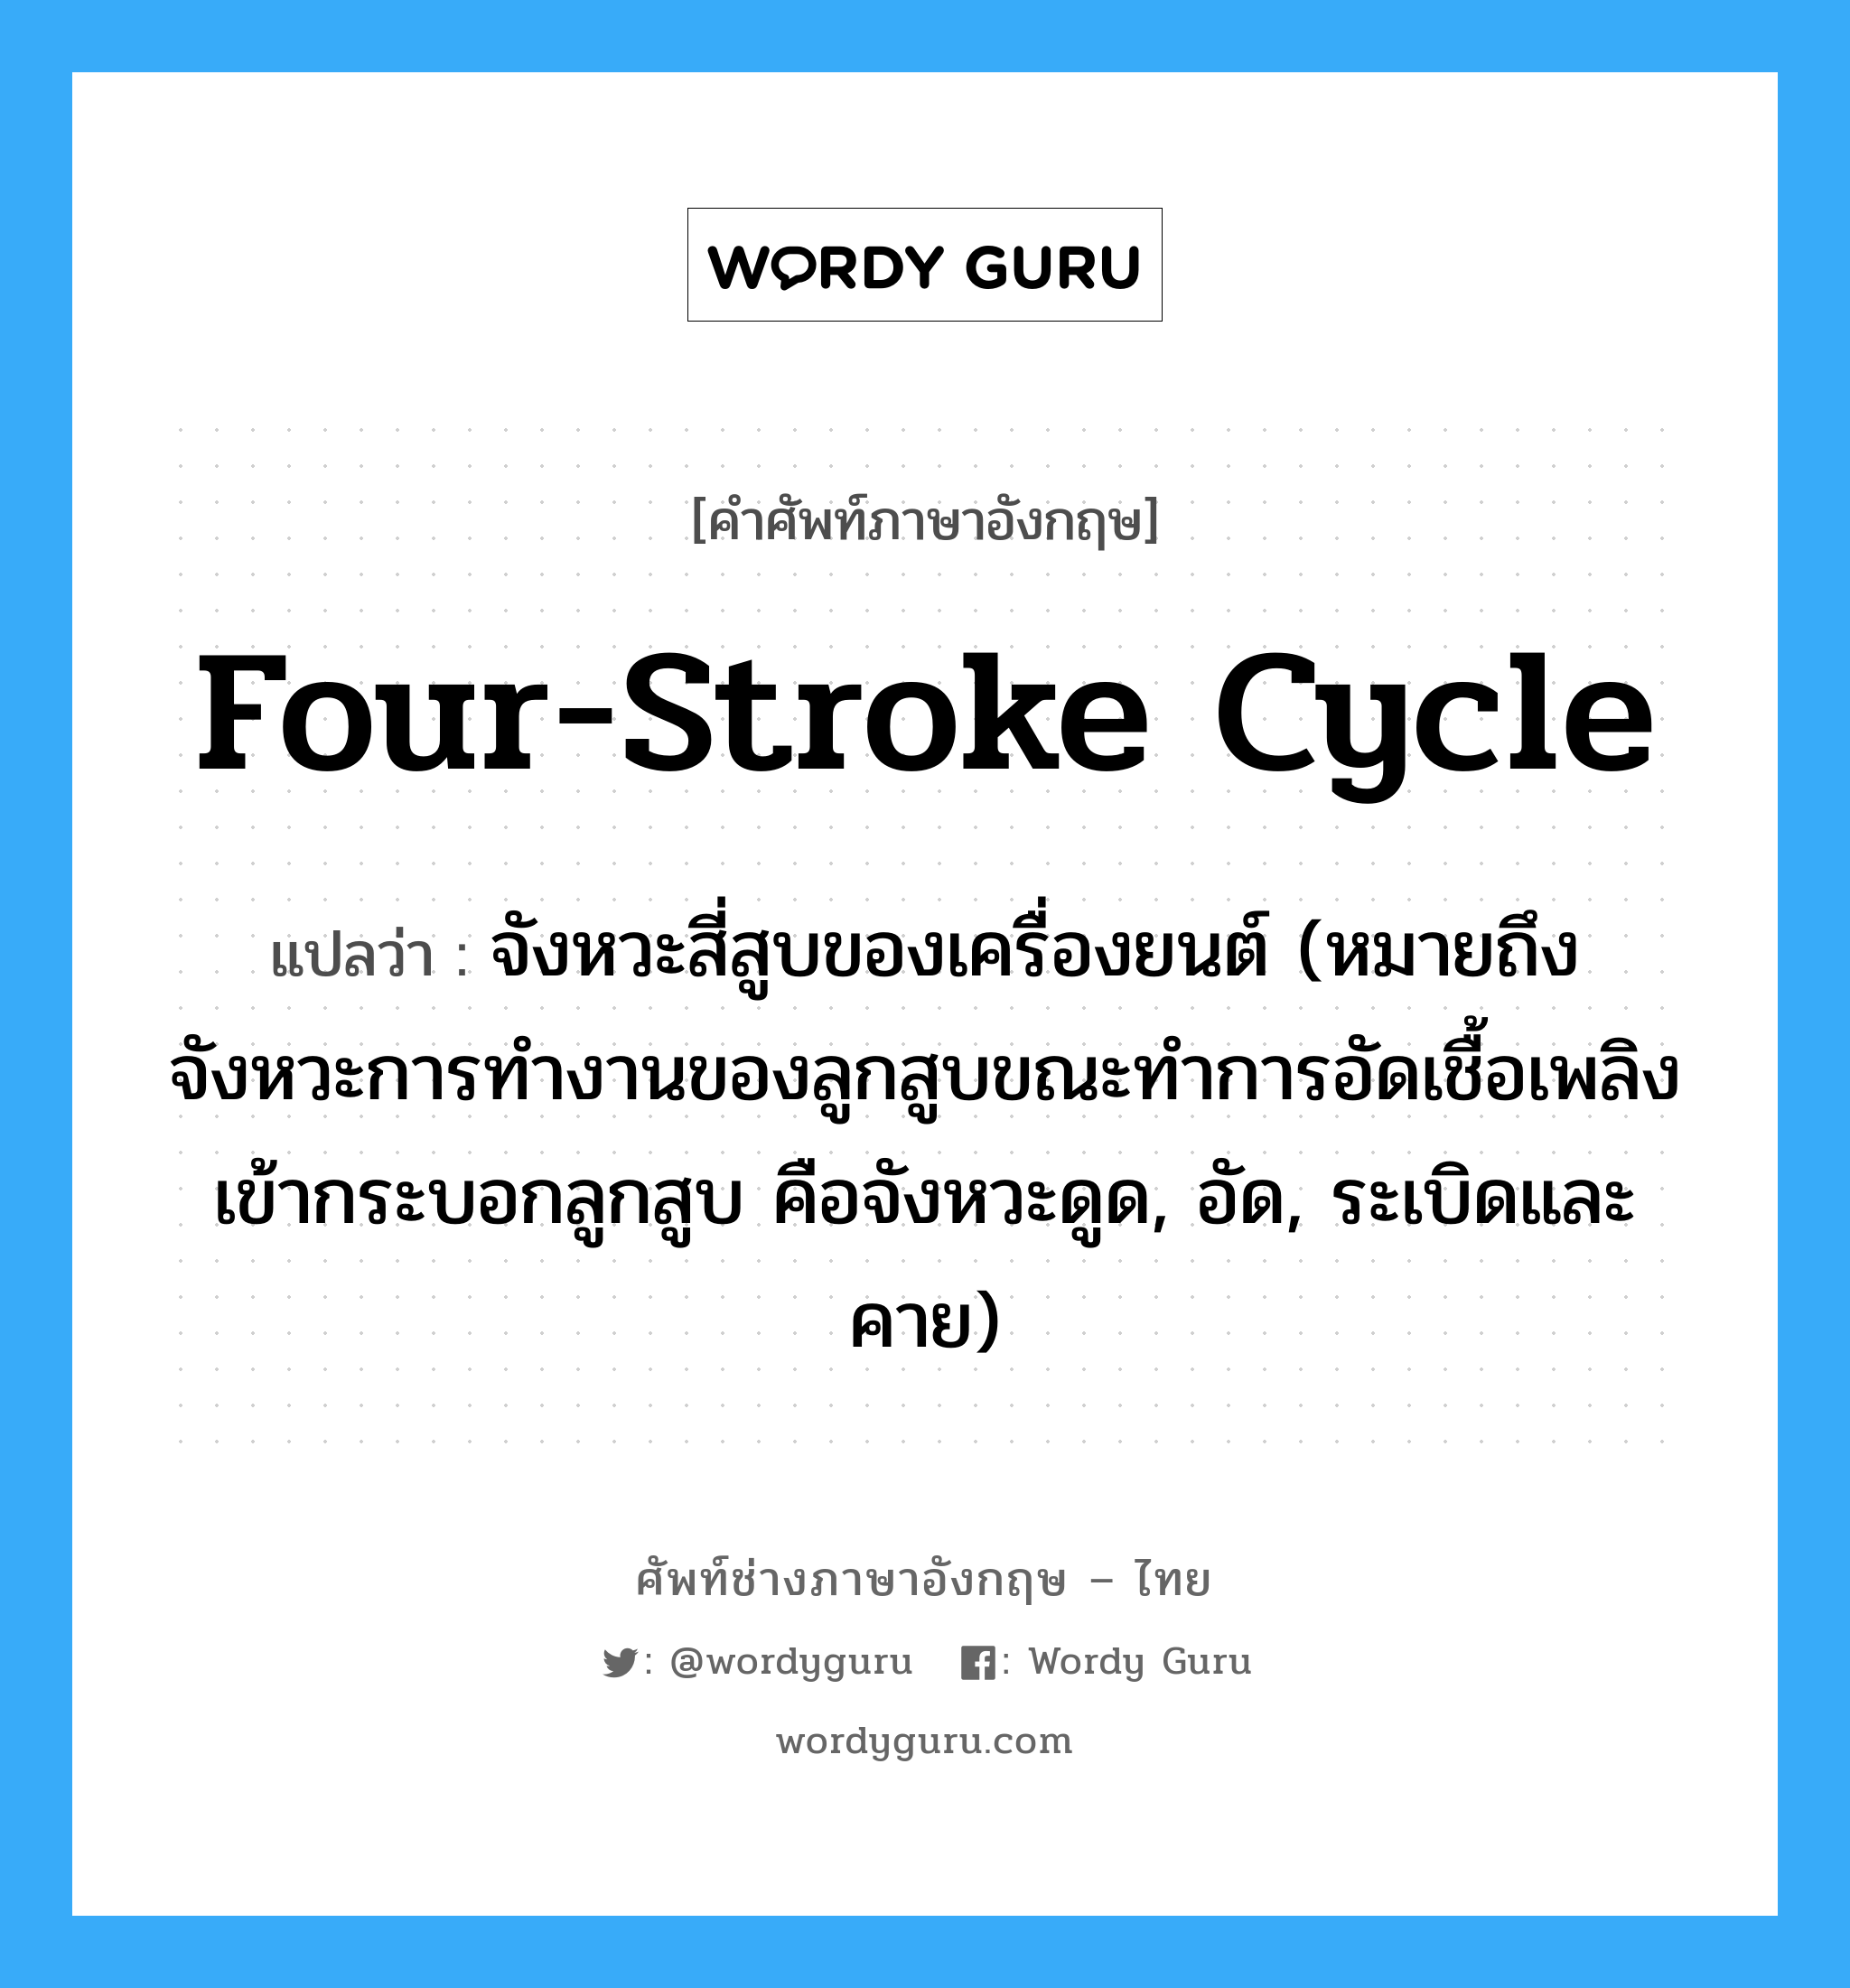 four-stroke cycle แปลว่า?, คำศัพท์ช่างภาษาอังกฤษ - ไทย four-stroke cycle คำศัพท์ภาษาอังกฤษ four-stroke cycle แปลว่า จังหวะสี่สูบของเครื่องยนต์ (หมายถึง จังหวะการทำงานของลูกสูบขณะทำการอัดเชื้อเพลิงเข้ากระบอกลูกสูบ คือจังหวะดูด, อัด, ระเบิดและคาย)